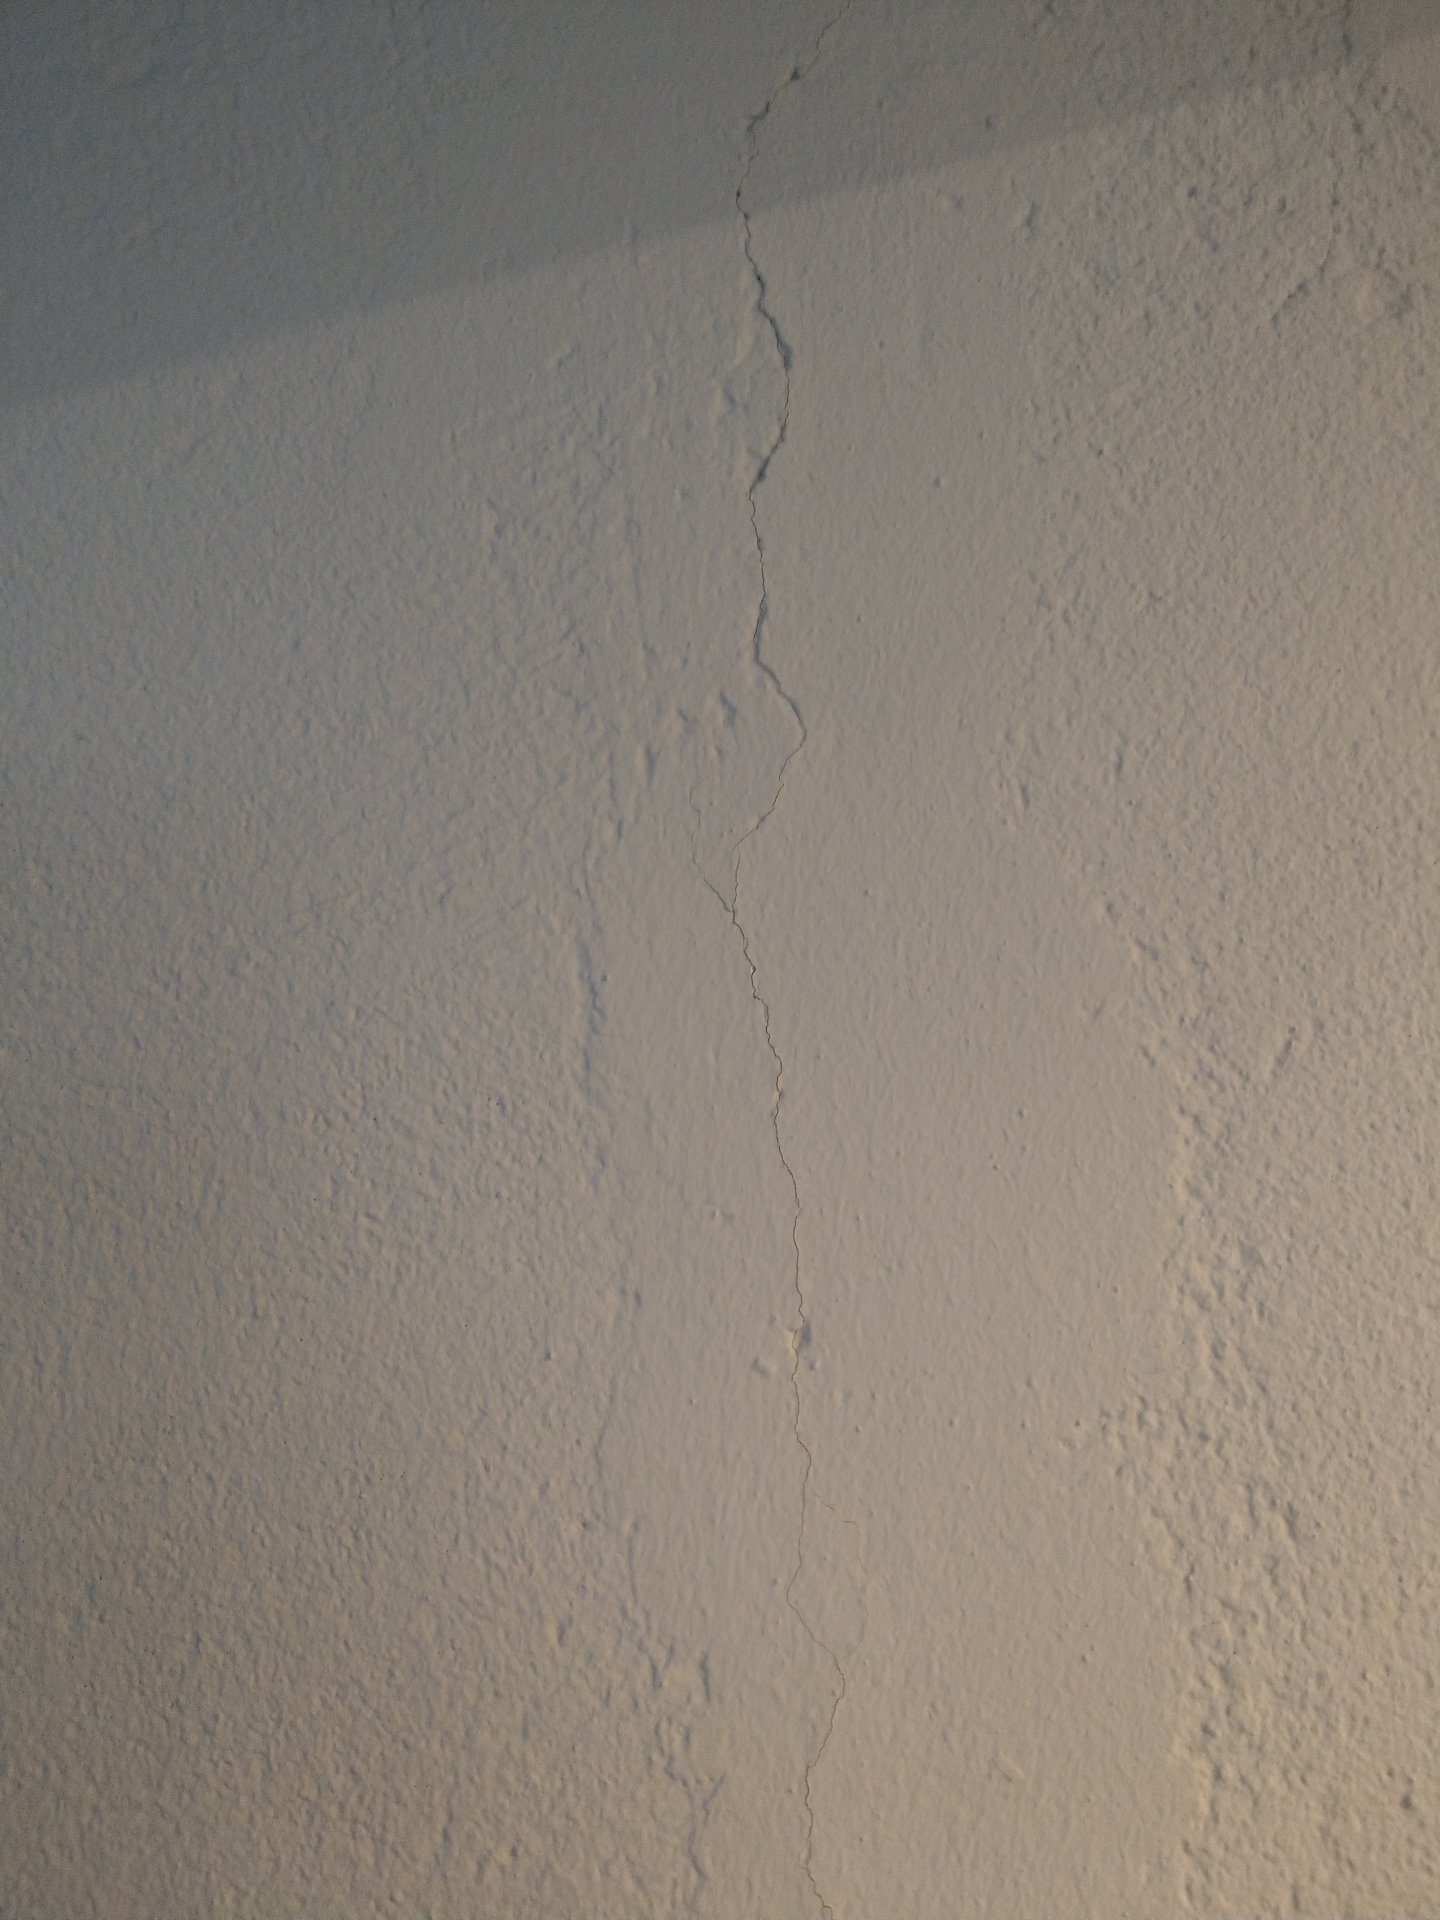 Gipsfaserplatte an Wand kleben - wie?